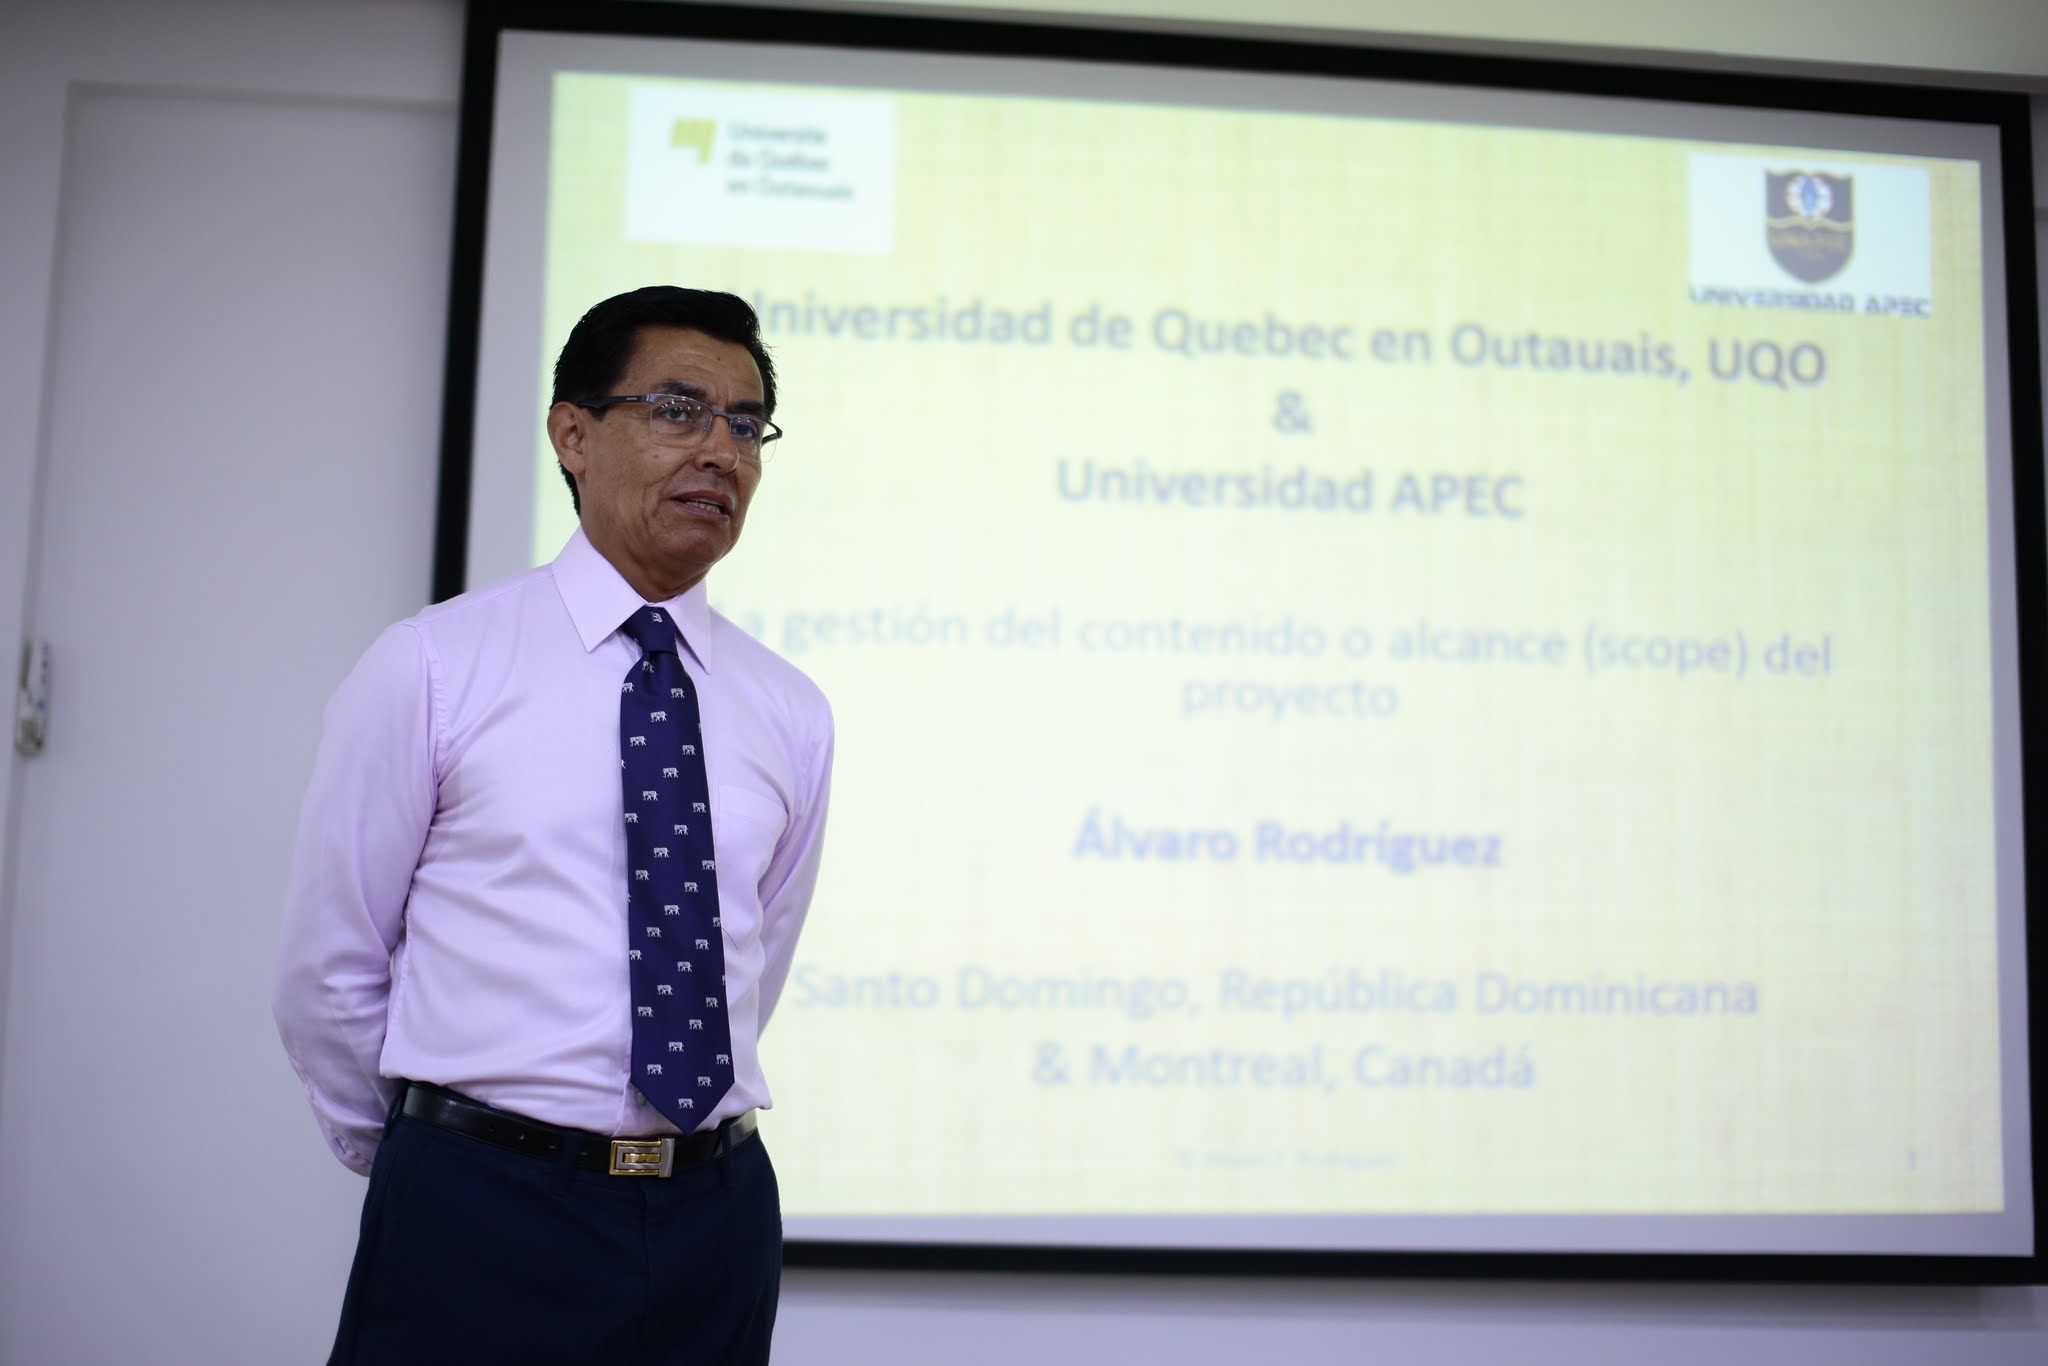 Álvaro Rodríguez, docente de la Universidad de Quebec Canadá